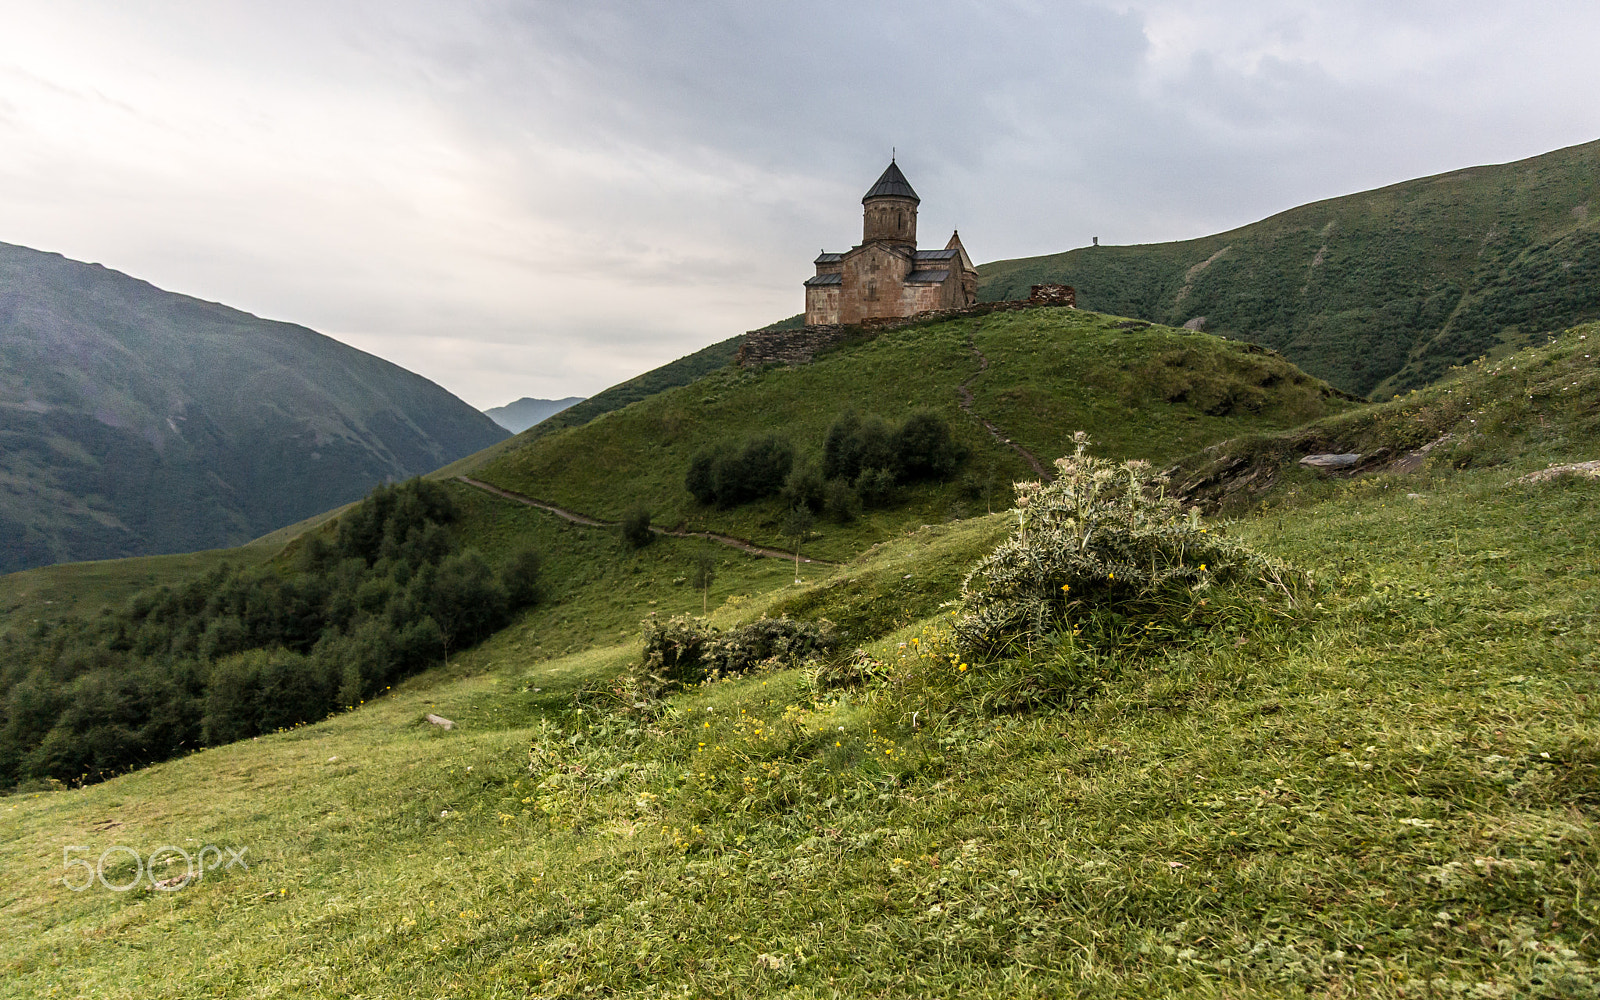 Nikon 1 AW1 sample photo. Gergeti church near mount kazbek photography